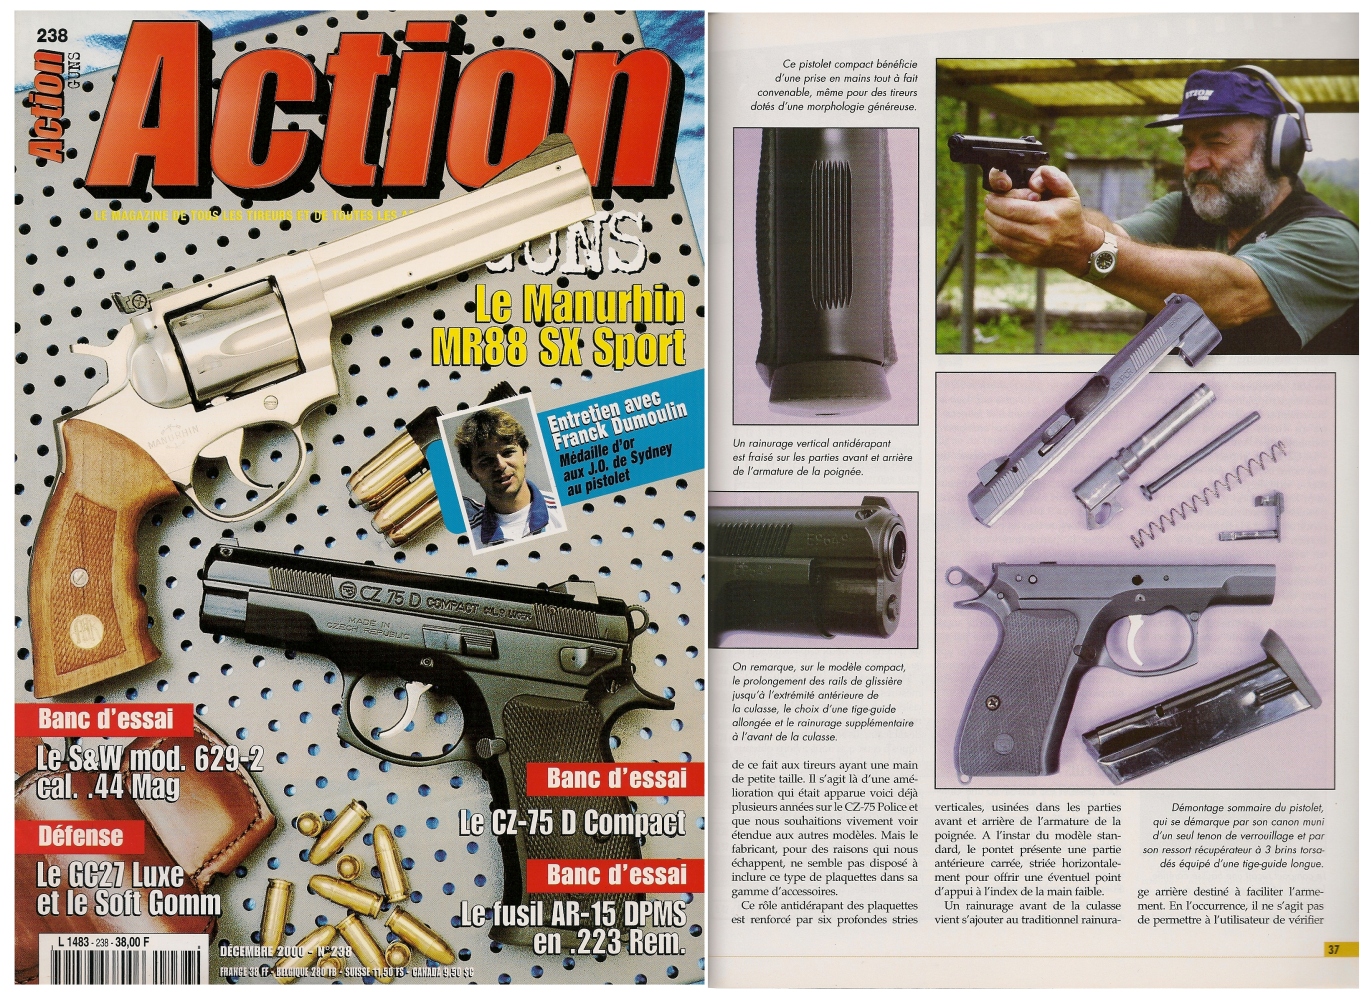 Le banc d’essai du pistolet CZ-74 D Compact a été publié sur 6 pages dans le magazine Action Guns n°238 (décembre 2000). 